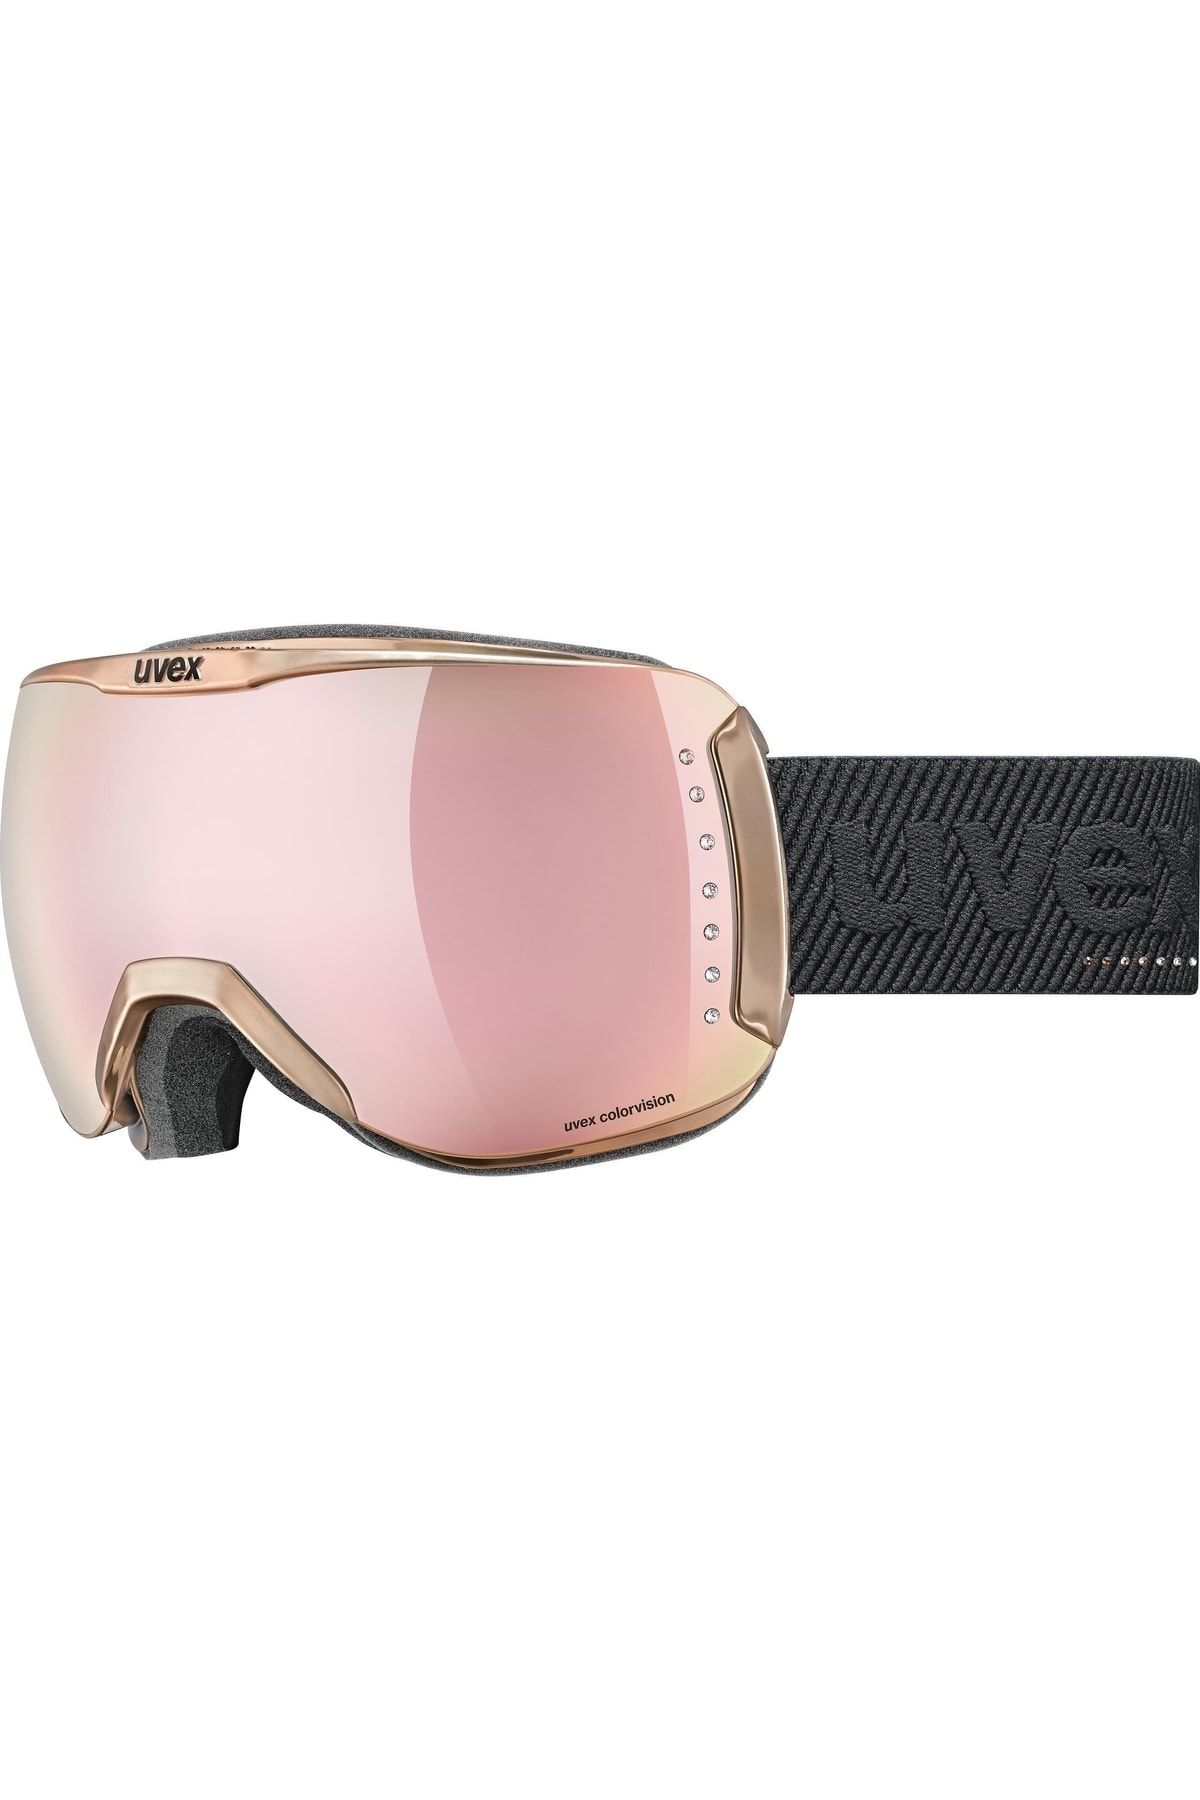 Uvex Dh 2100 We Glamour Gül-yeşil Kayak Gözlüğü